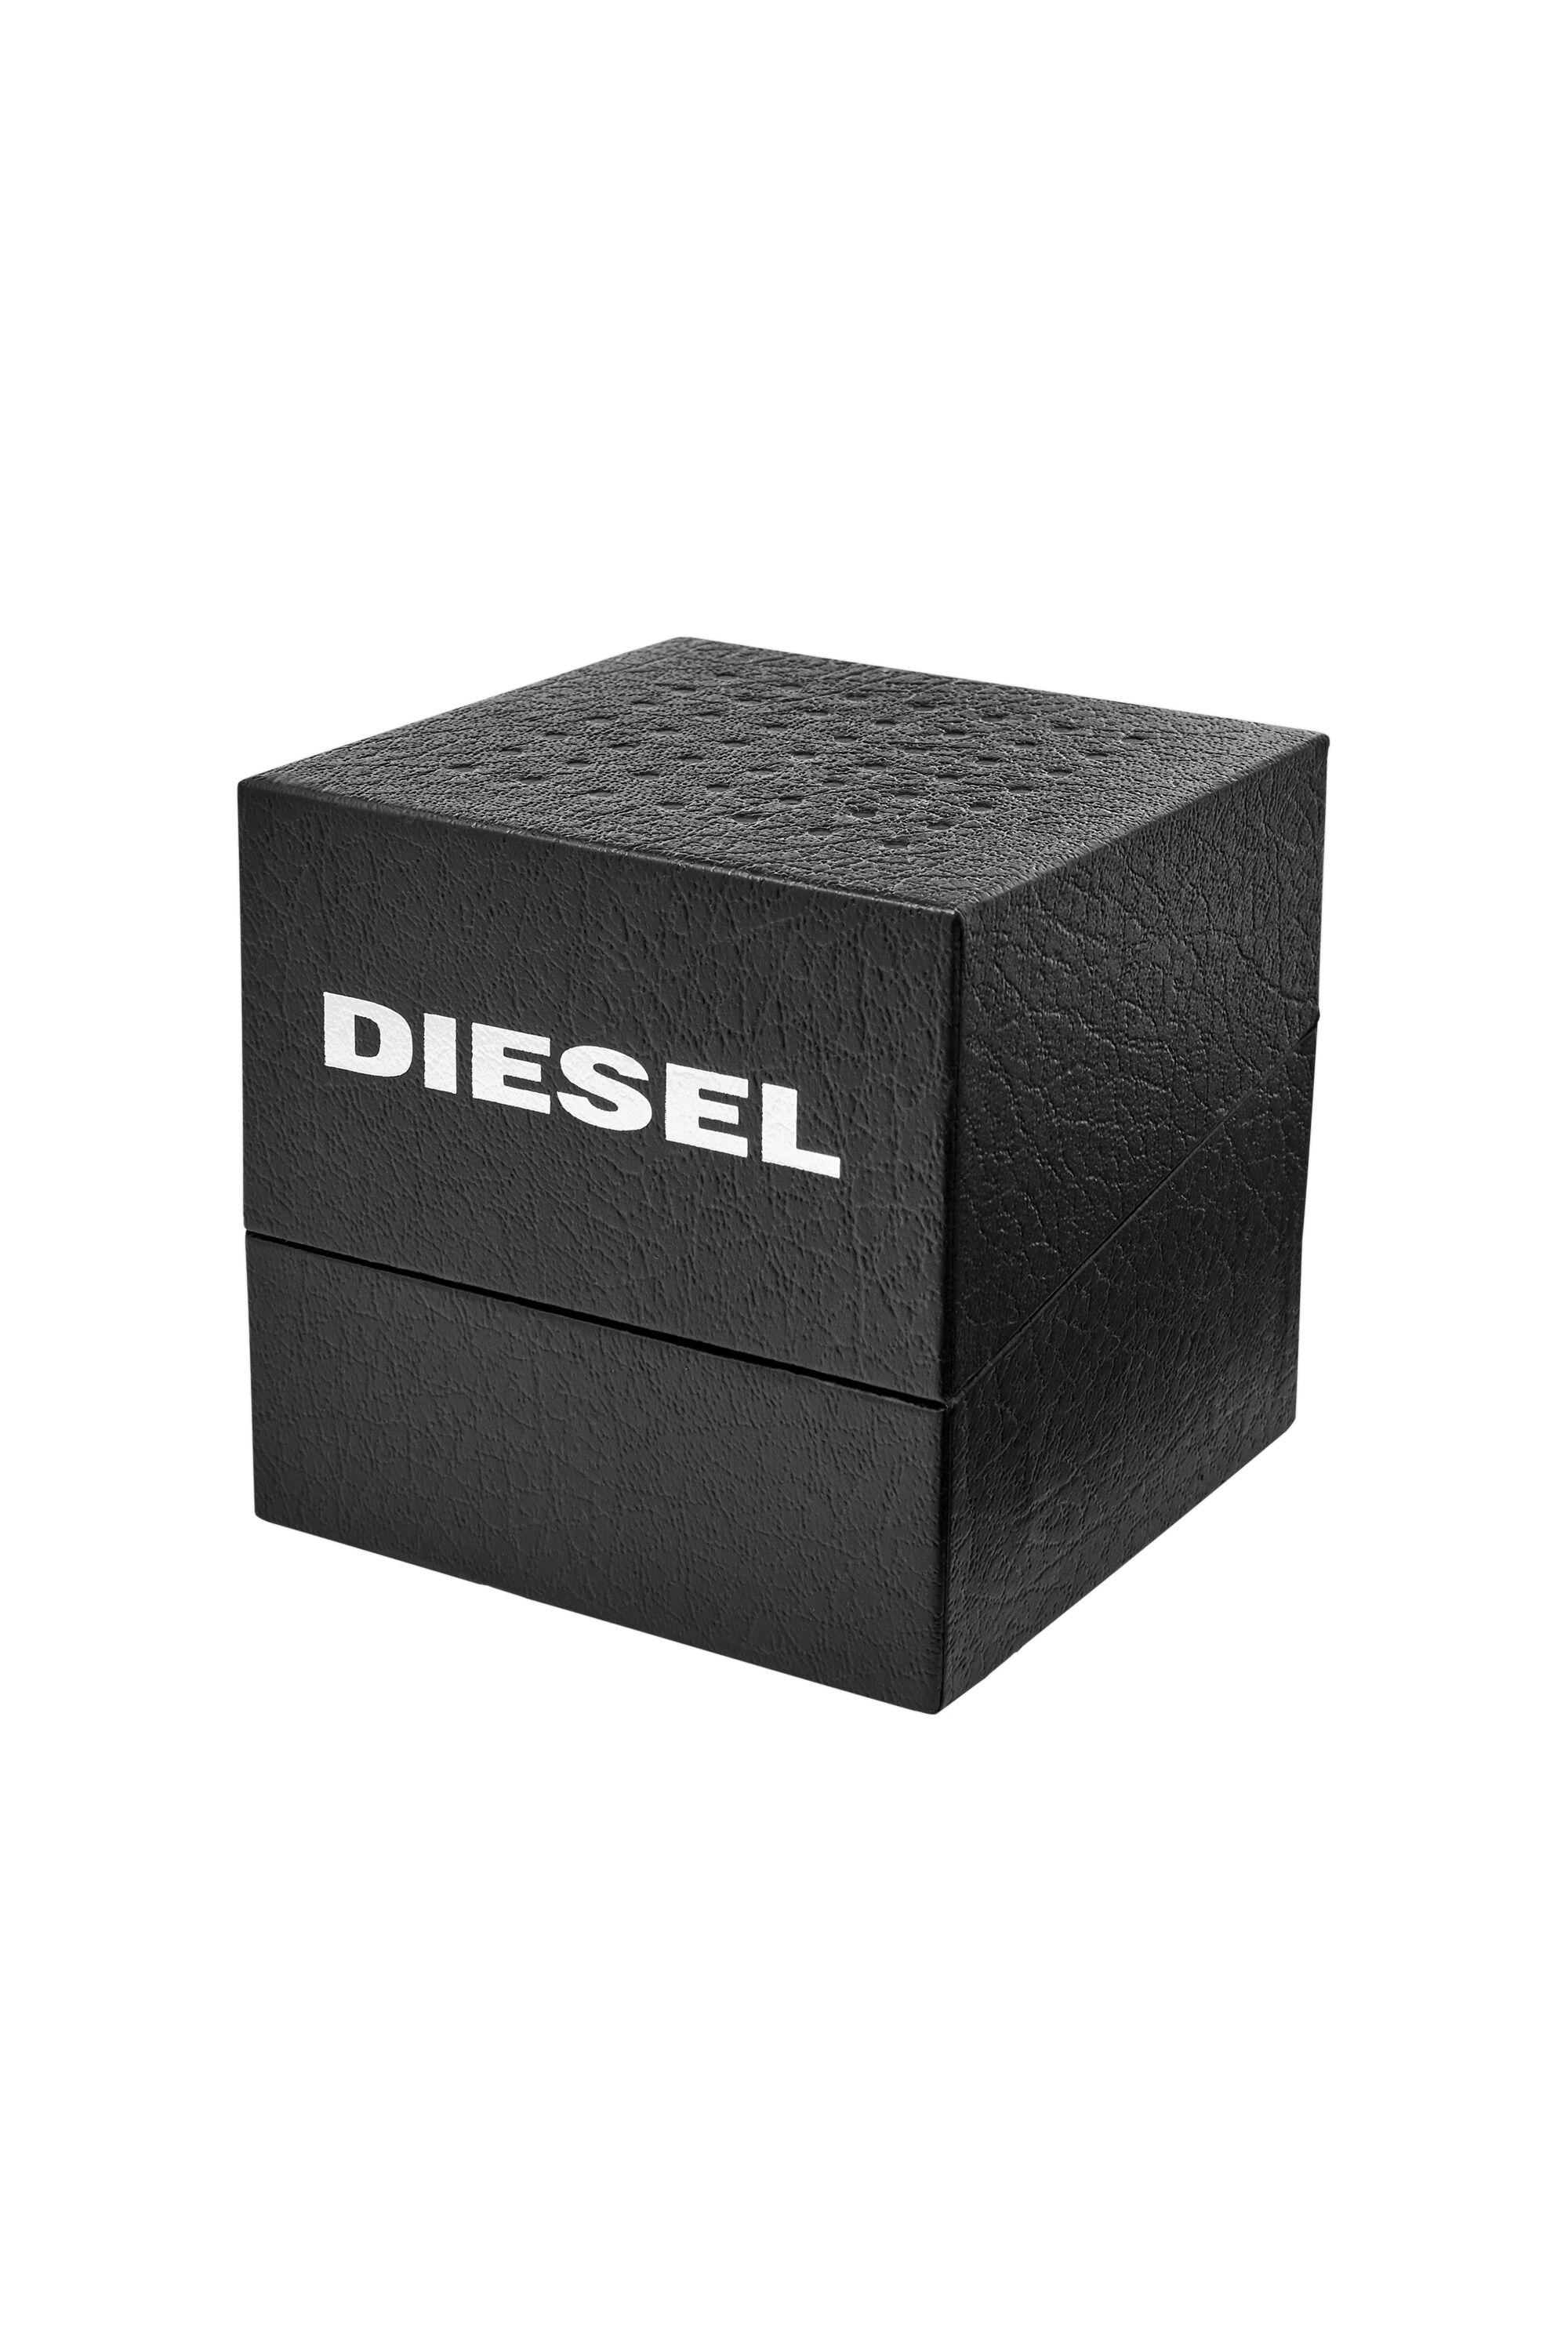 Diesel - DZ1906, Negro - Image 6